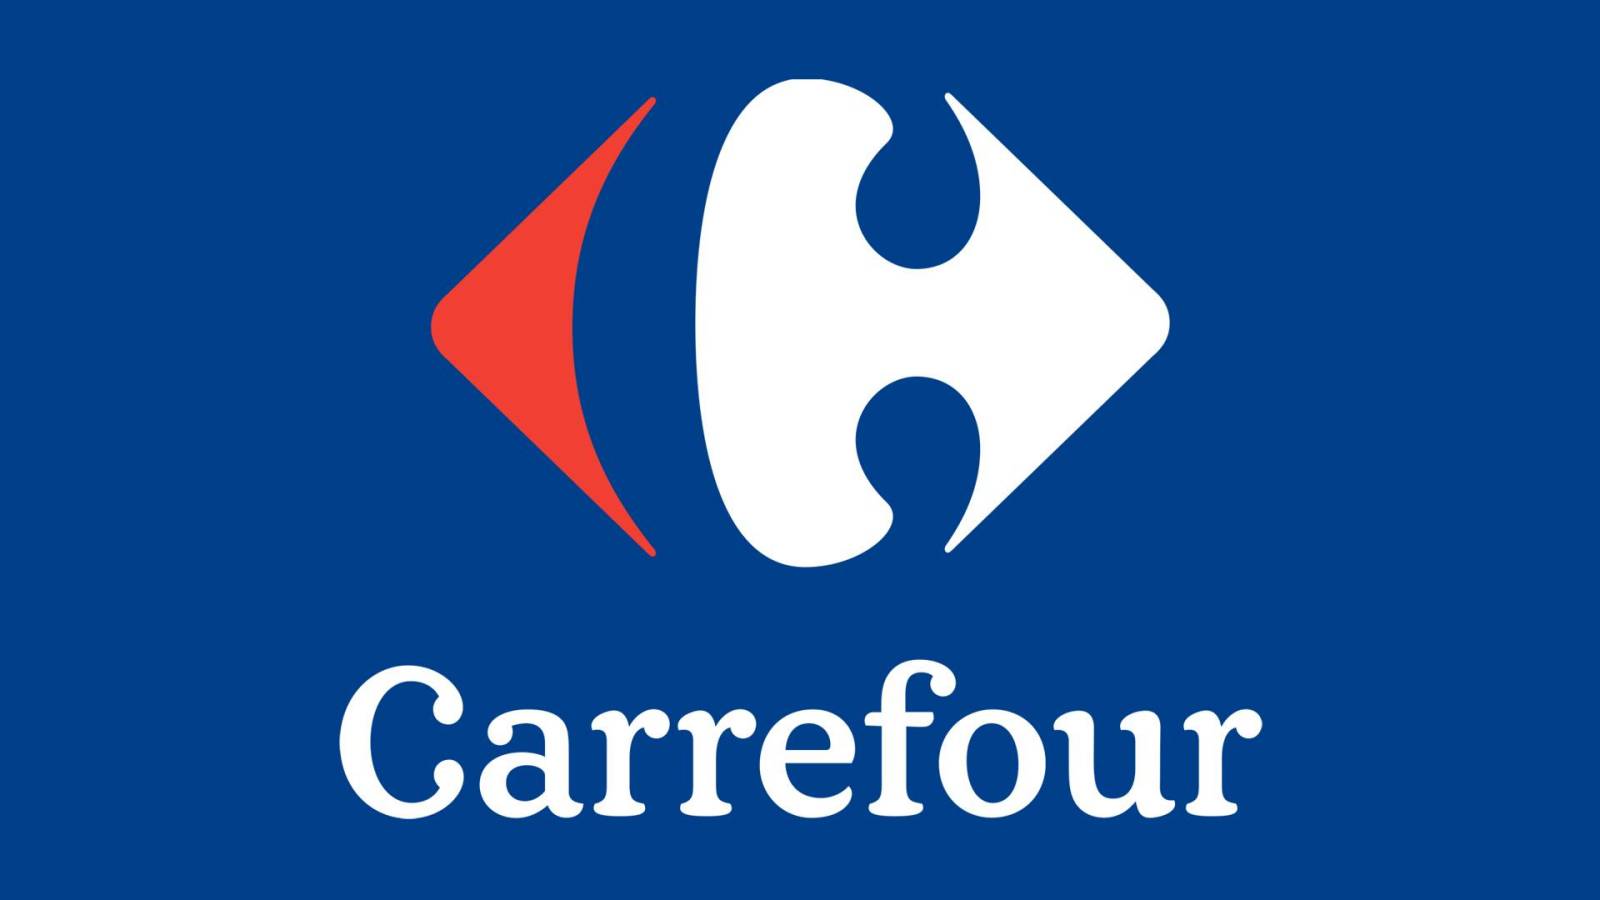 Carrefour Electrocasnicele REDUCERE Craciun Romania